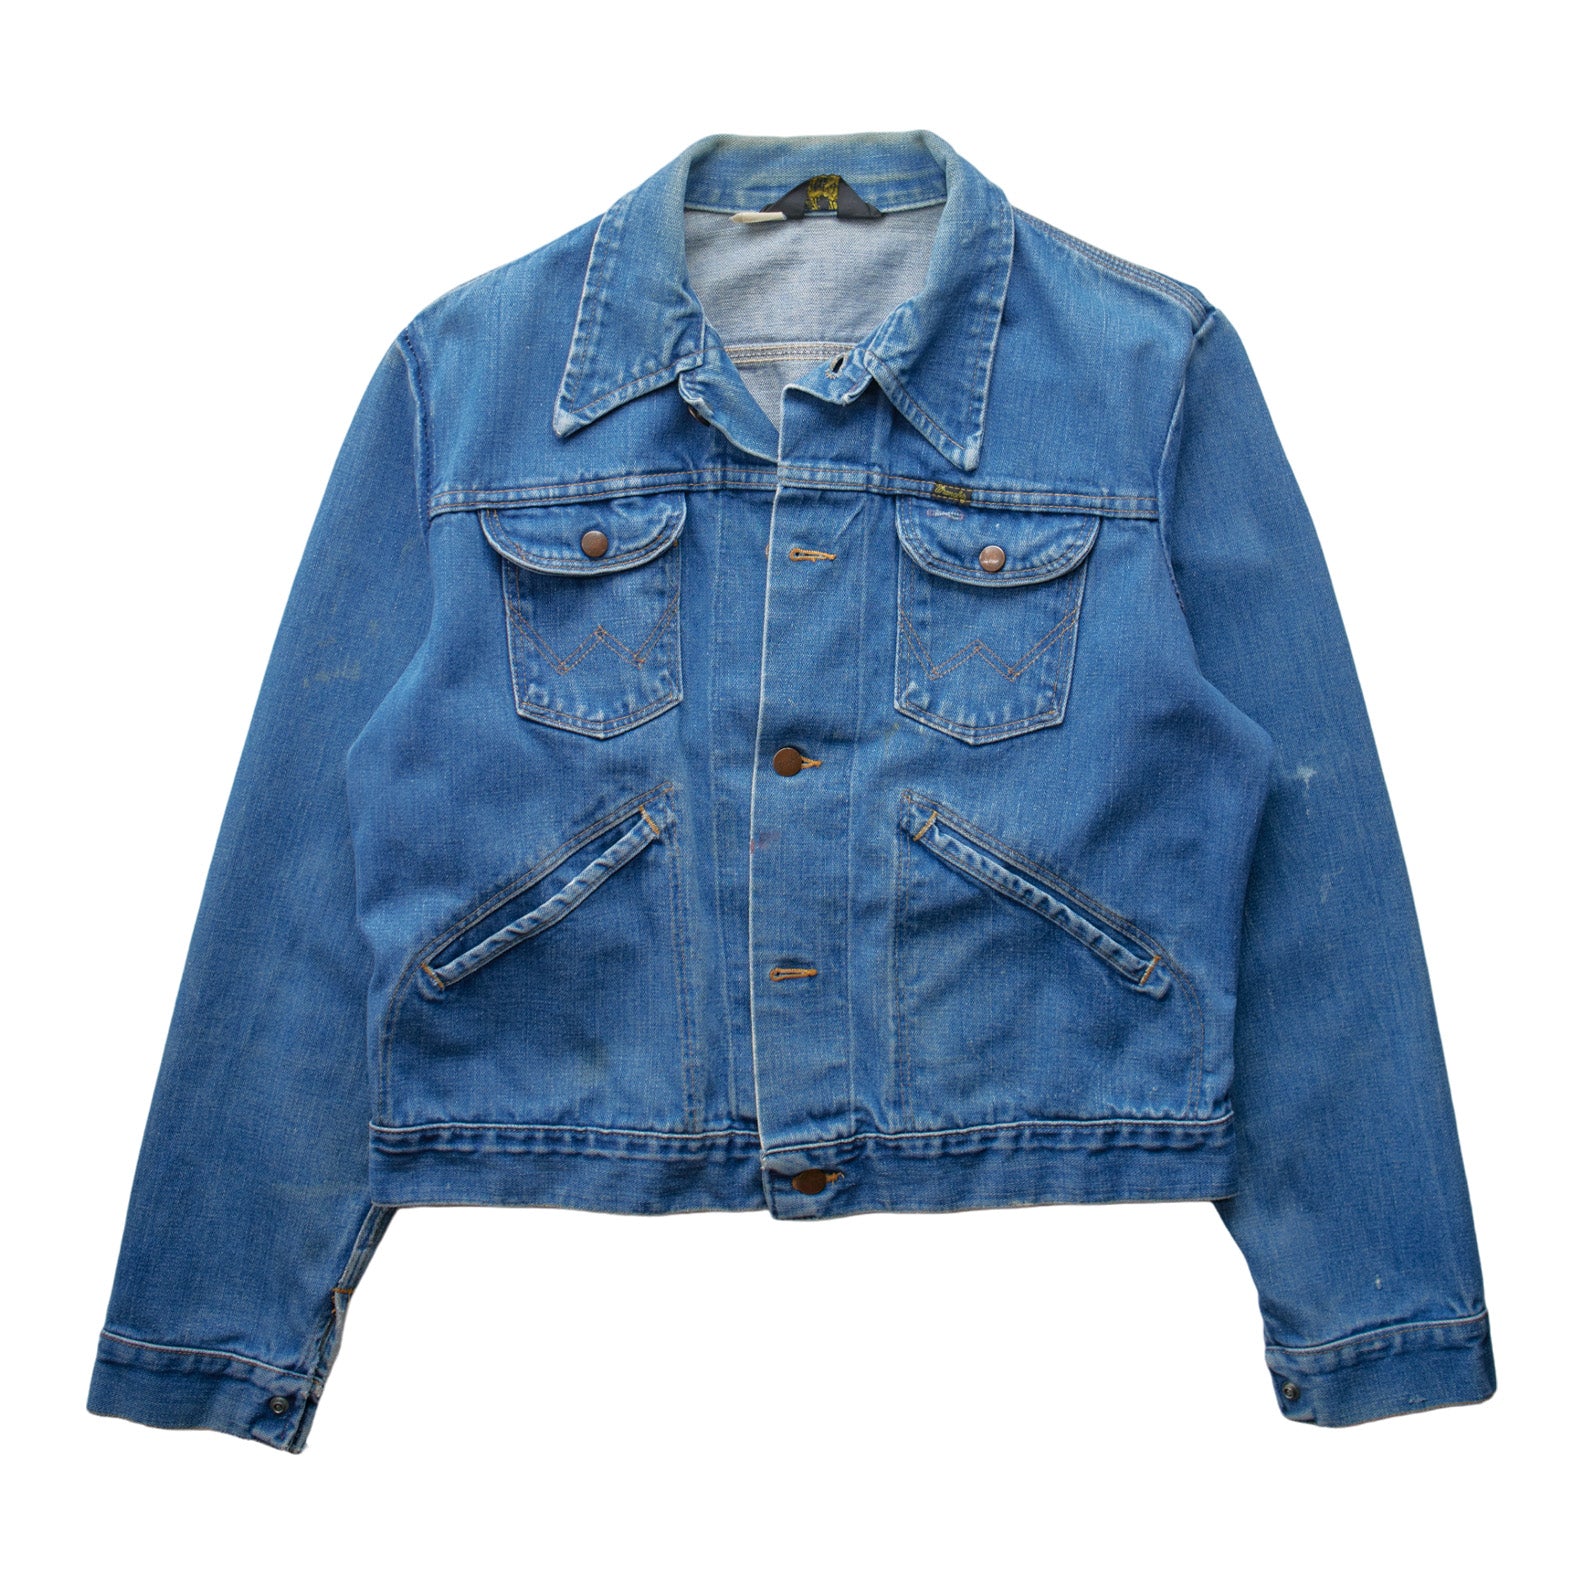 M) 80s Wrangler Denim Jacket – Springy Jeans